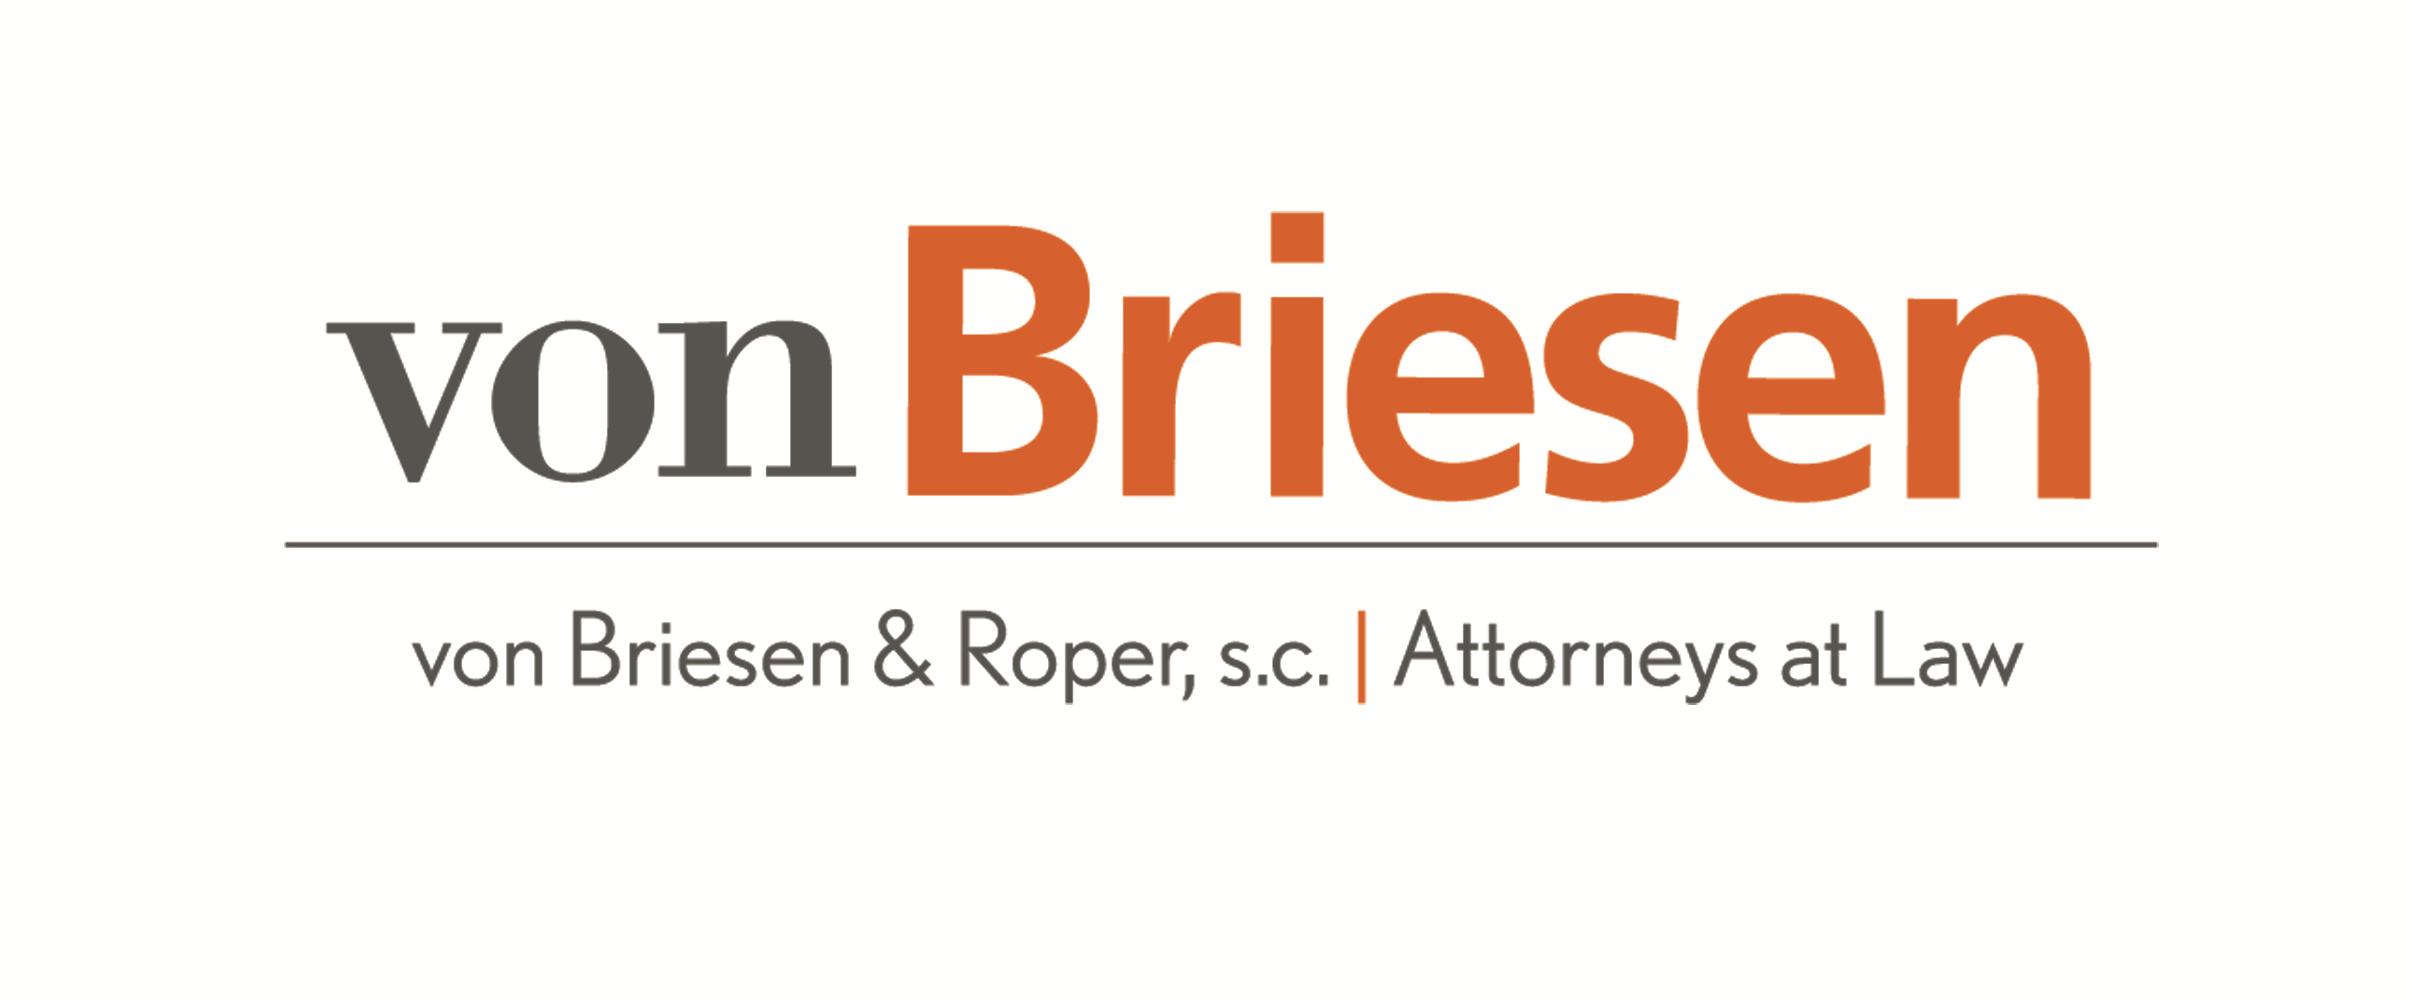 von Briesen & Roper s.c. logo